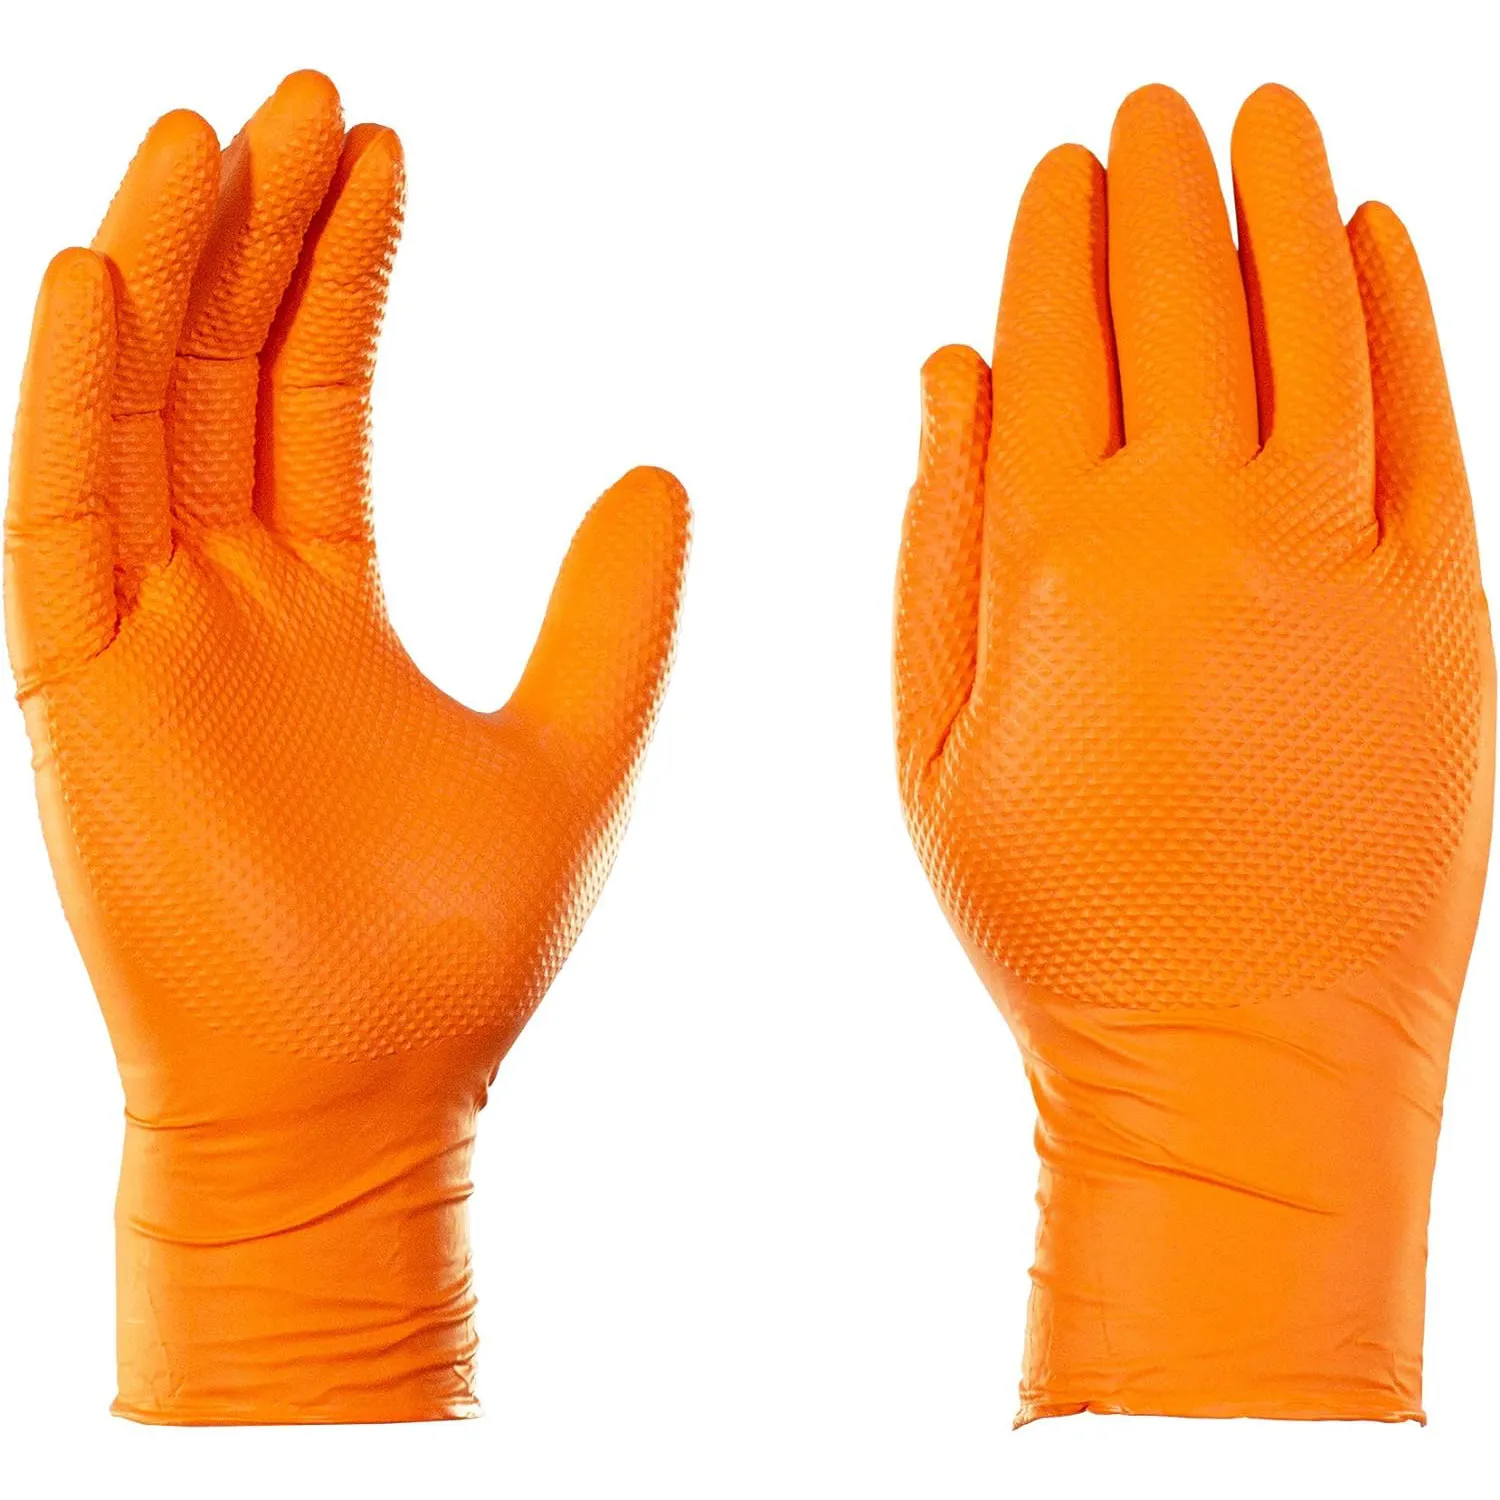 Guante médico de mano desechable 8 mil nitrilo naranja claro negro diamante nitrilo guantes desechables látex caja gratis de 100